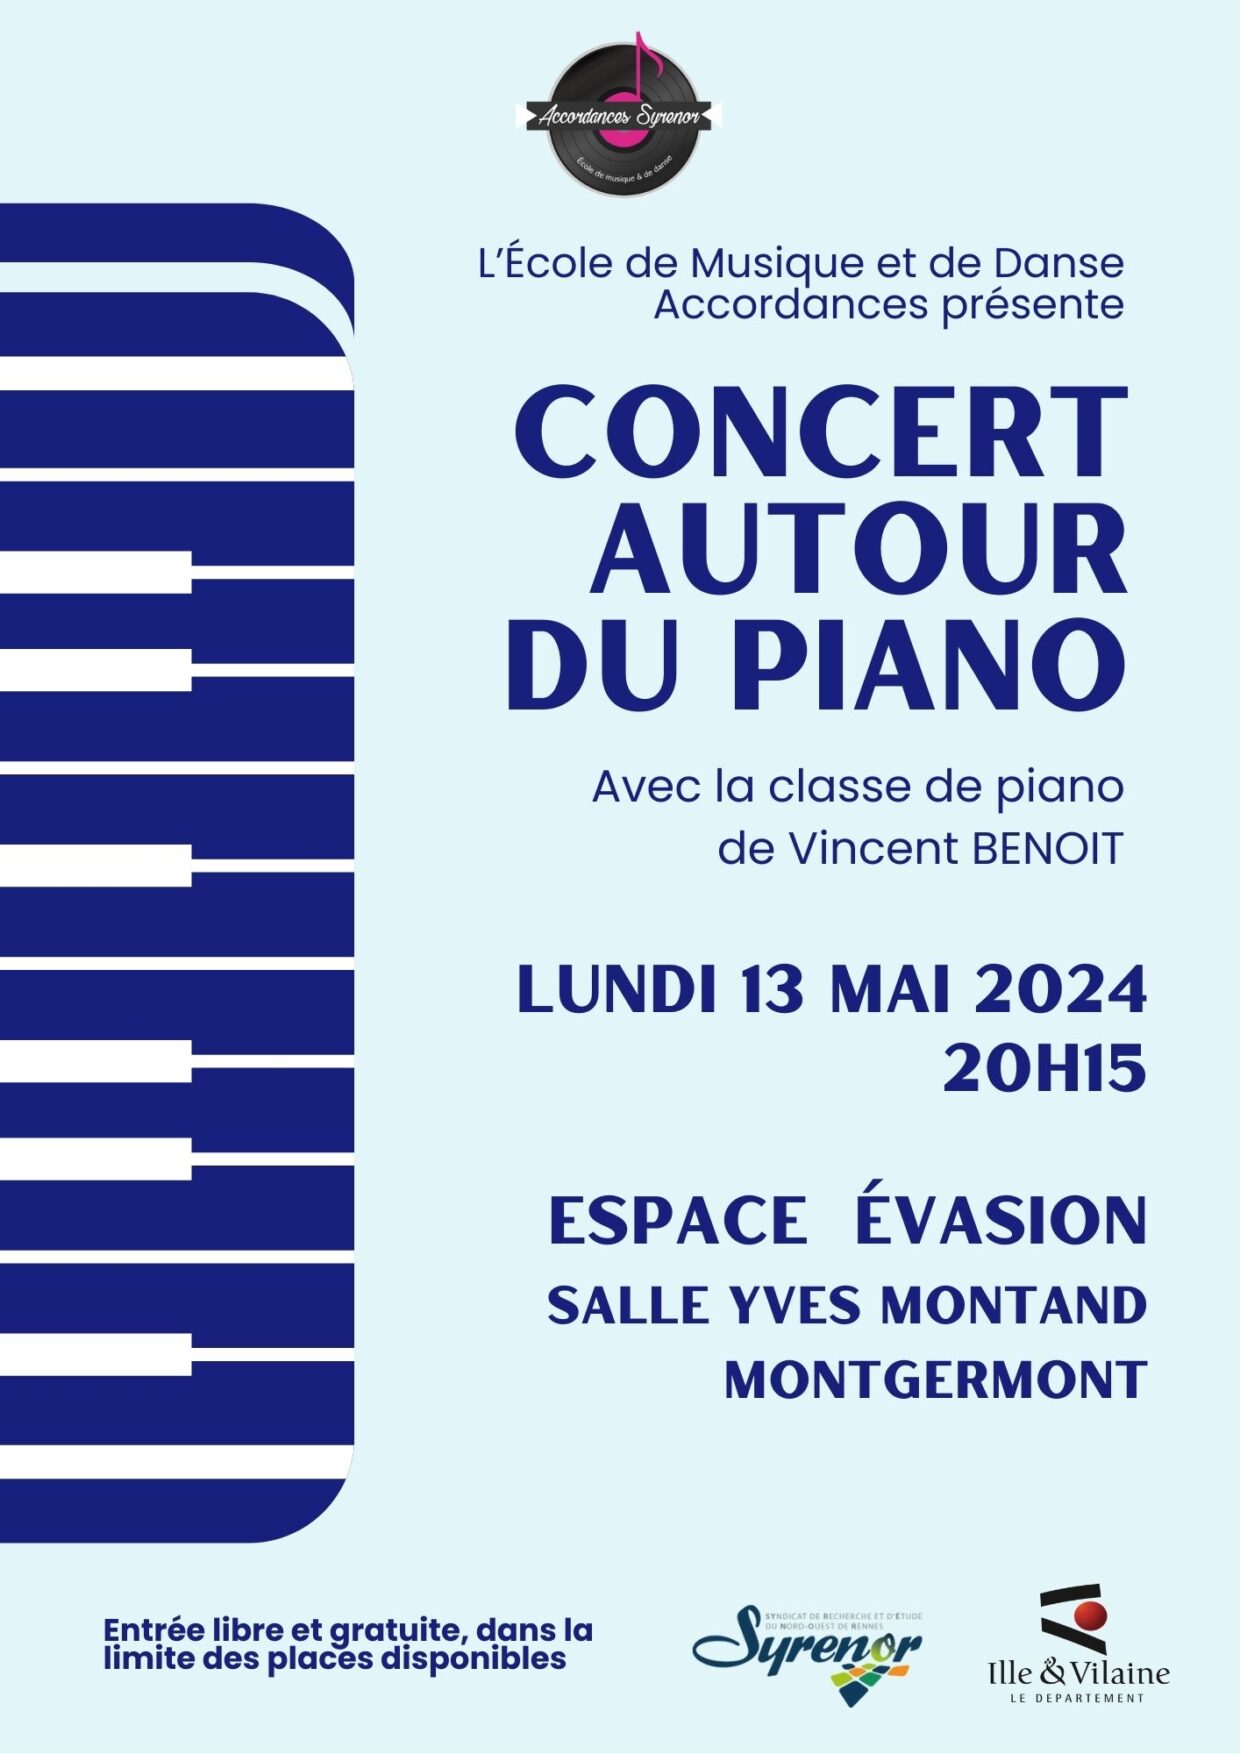 Concert autour du piano_13-05-2024_MGT